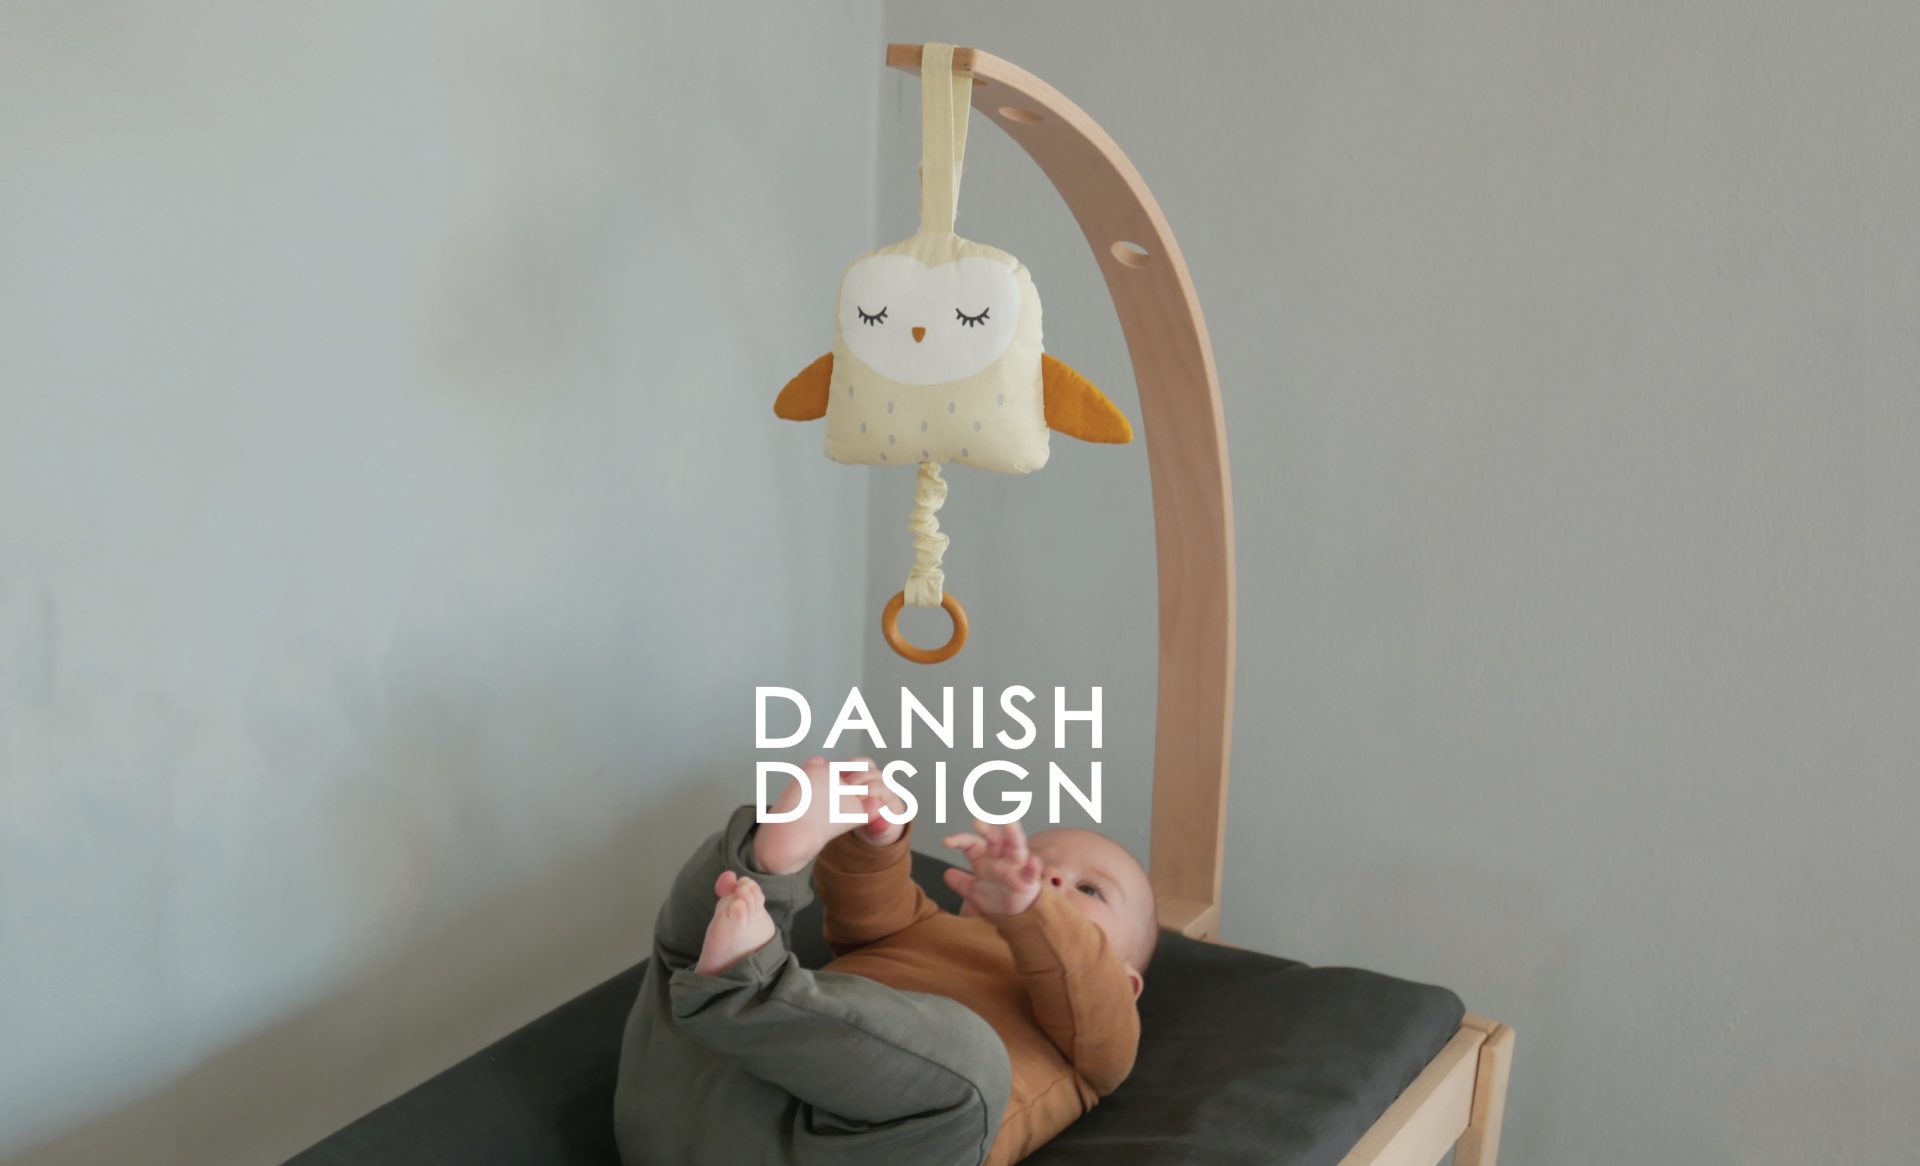 Danish design